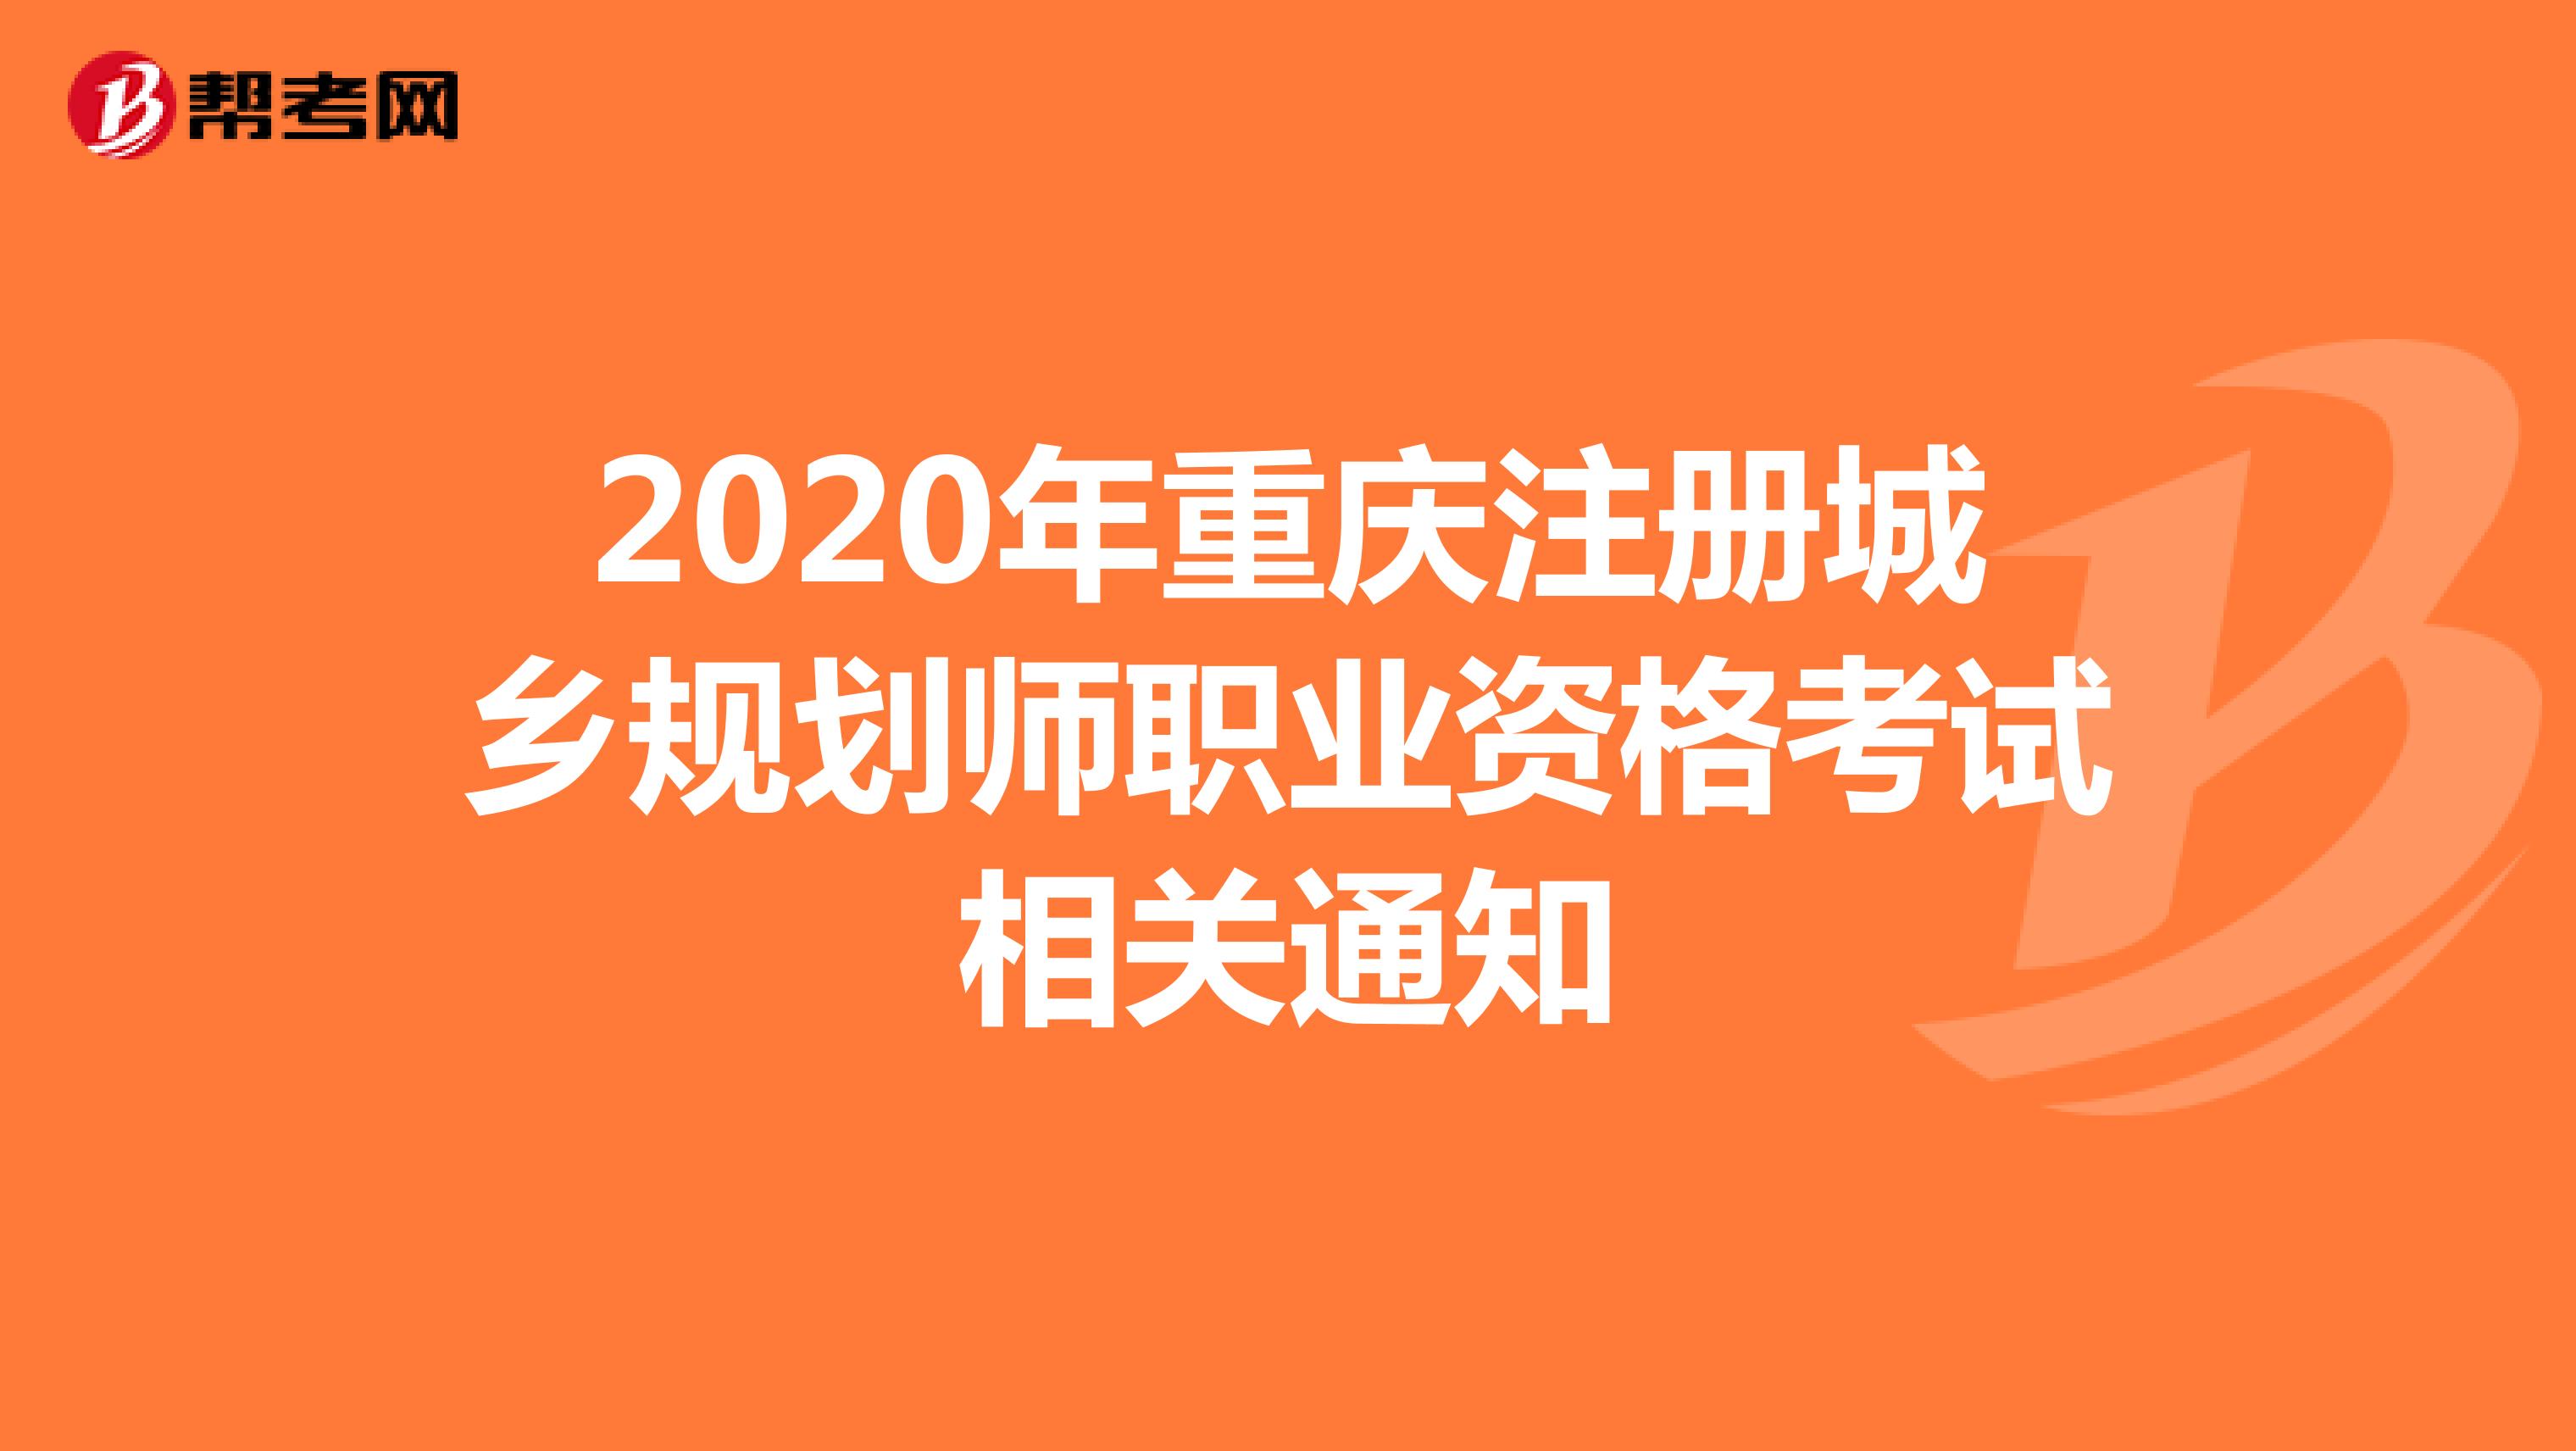 2020年重庆注册城乡规划师职业资格考试相关通知